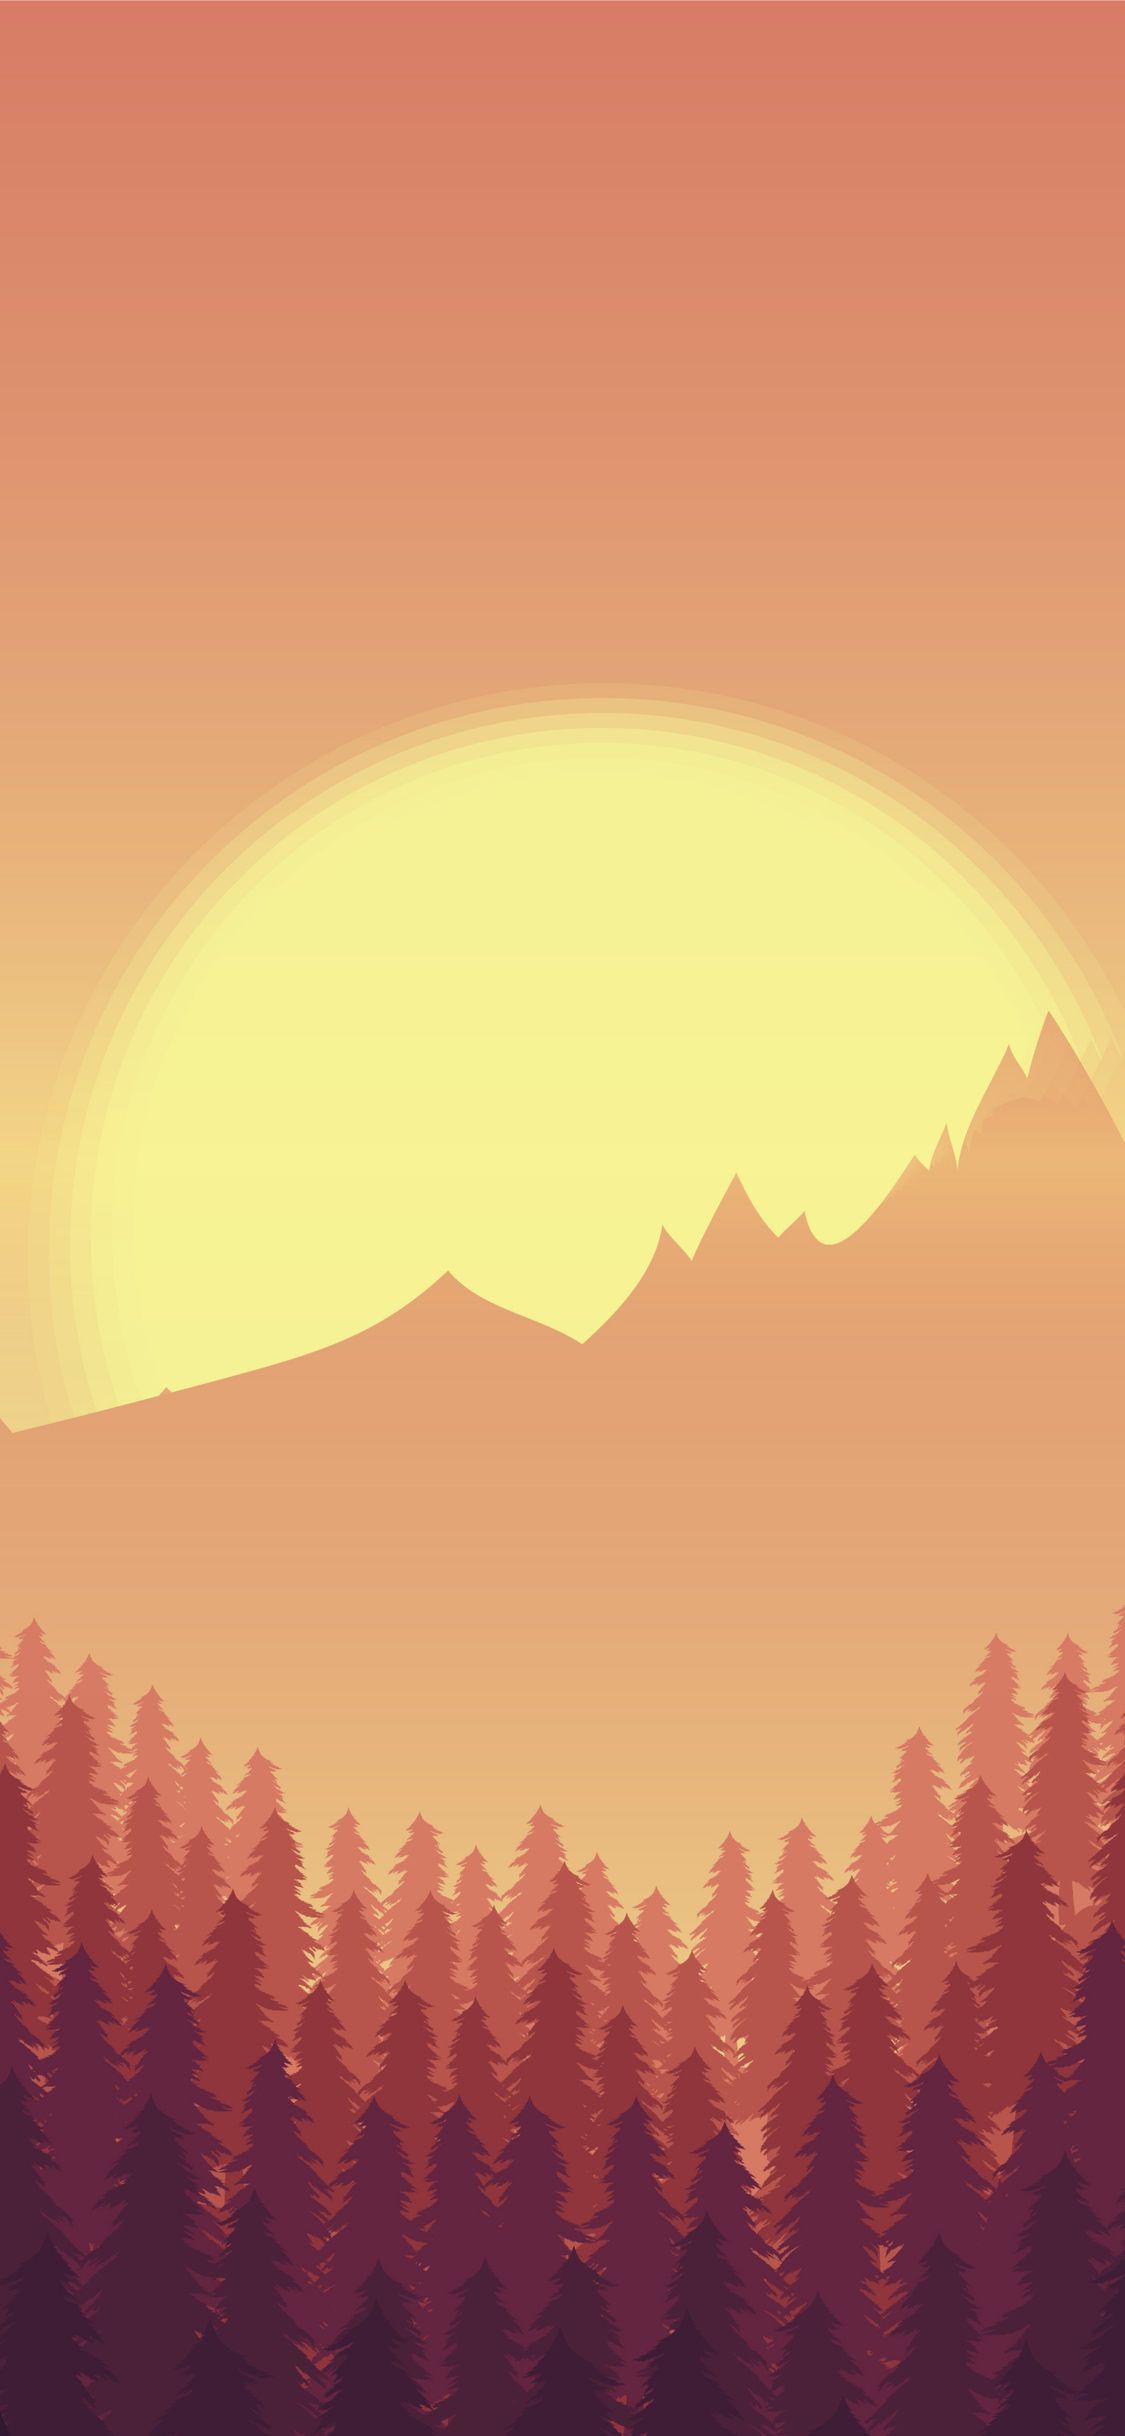 sunset-minimal-mountains-trees-8k-3n.jpg